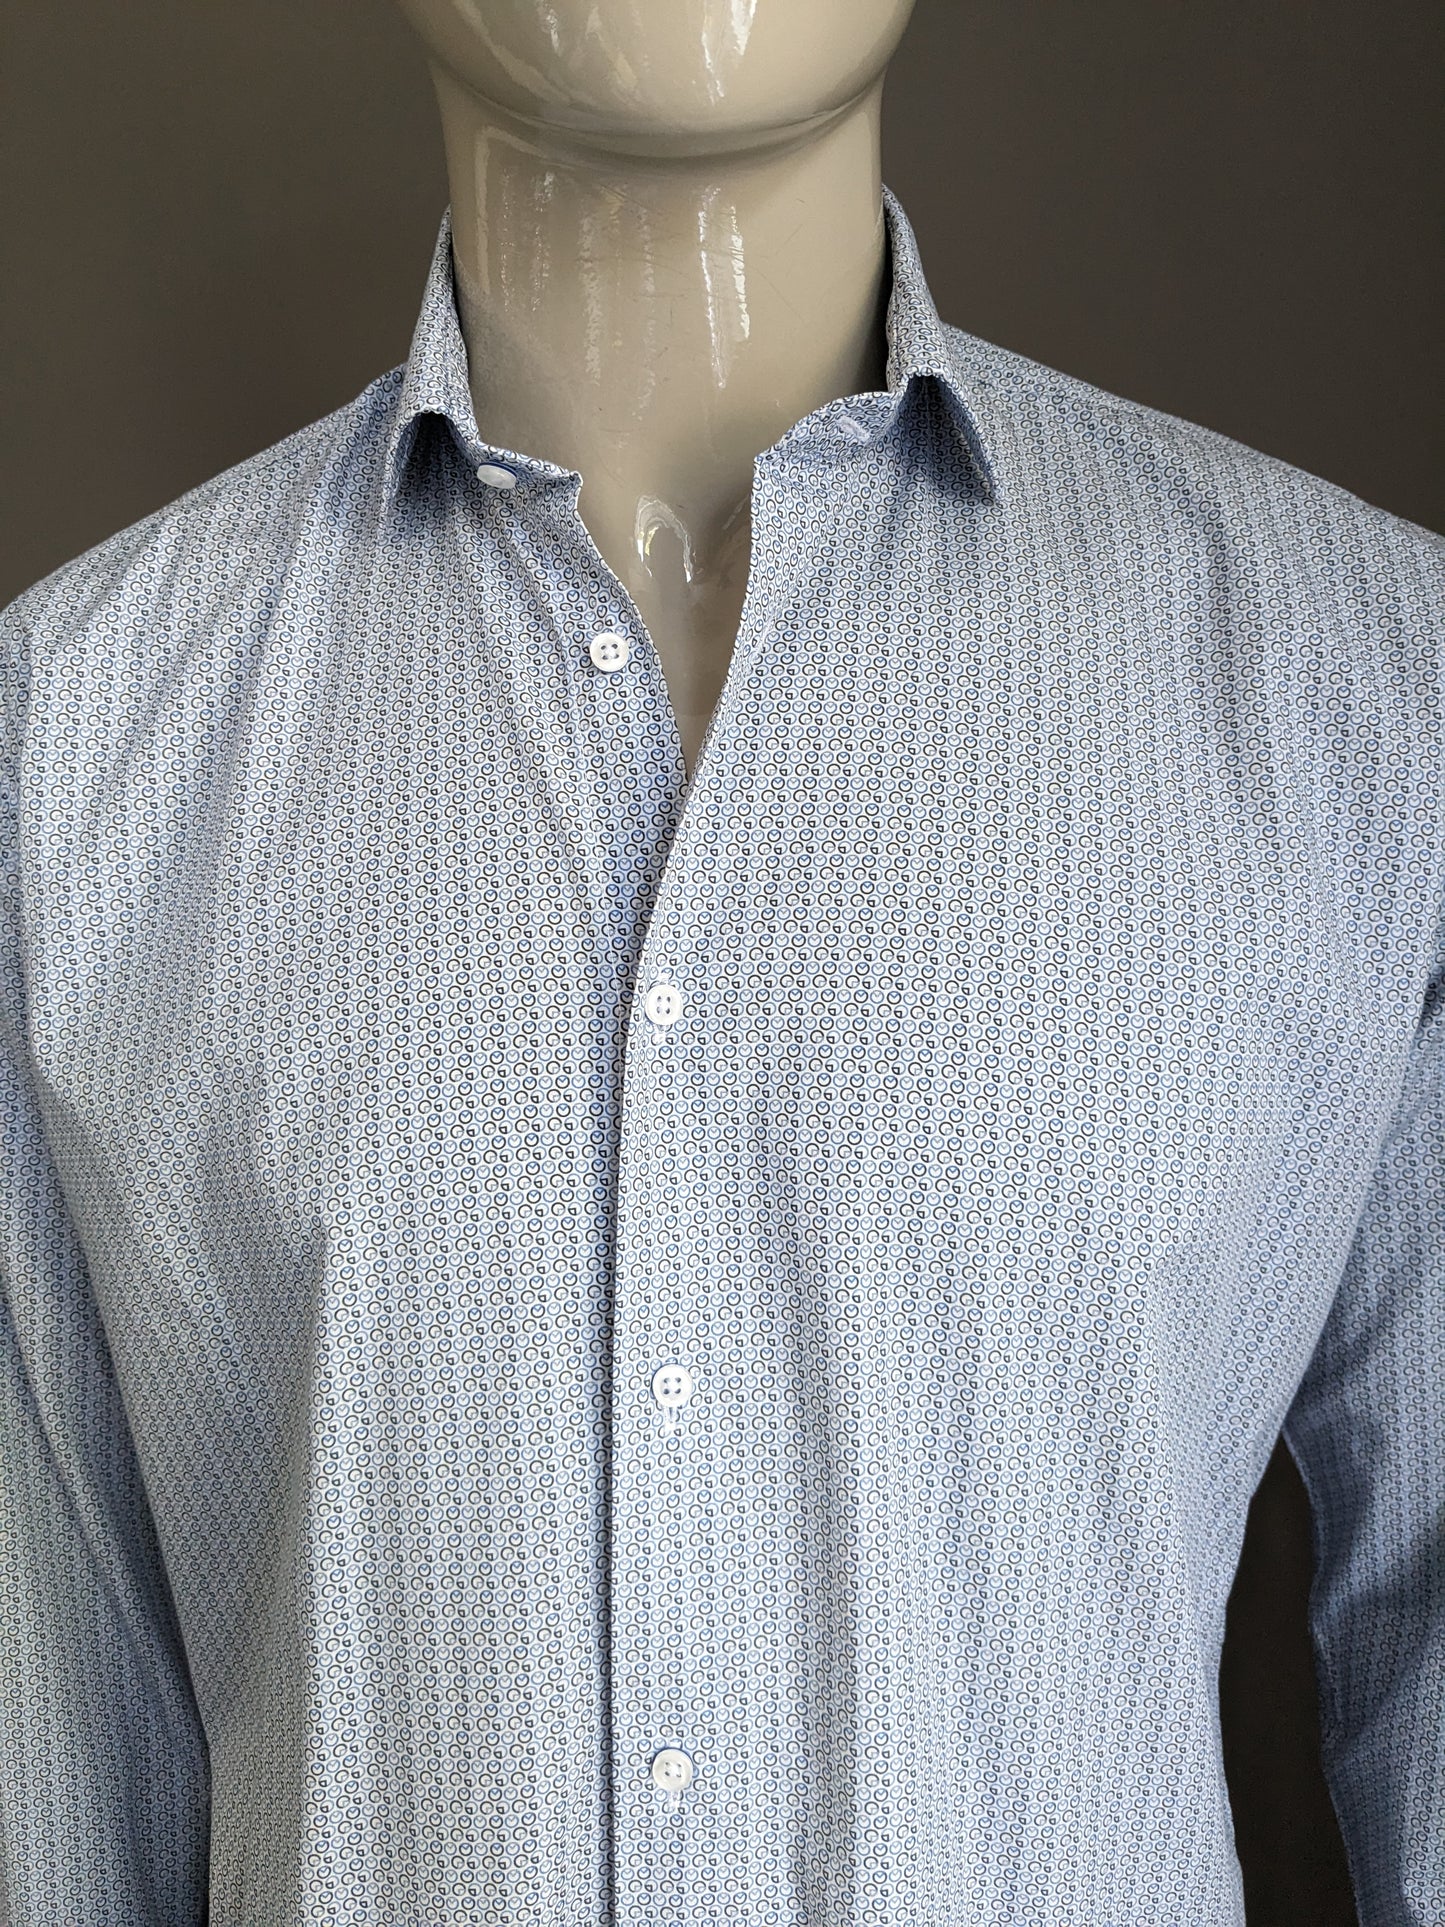 Camisa de Max Goodman. Estampado blanco marrón azul. Talla L.